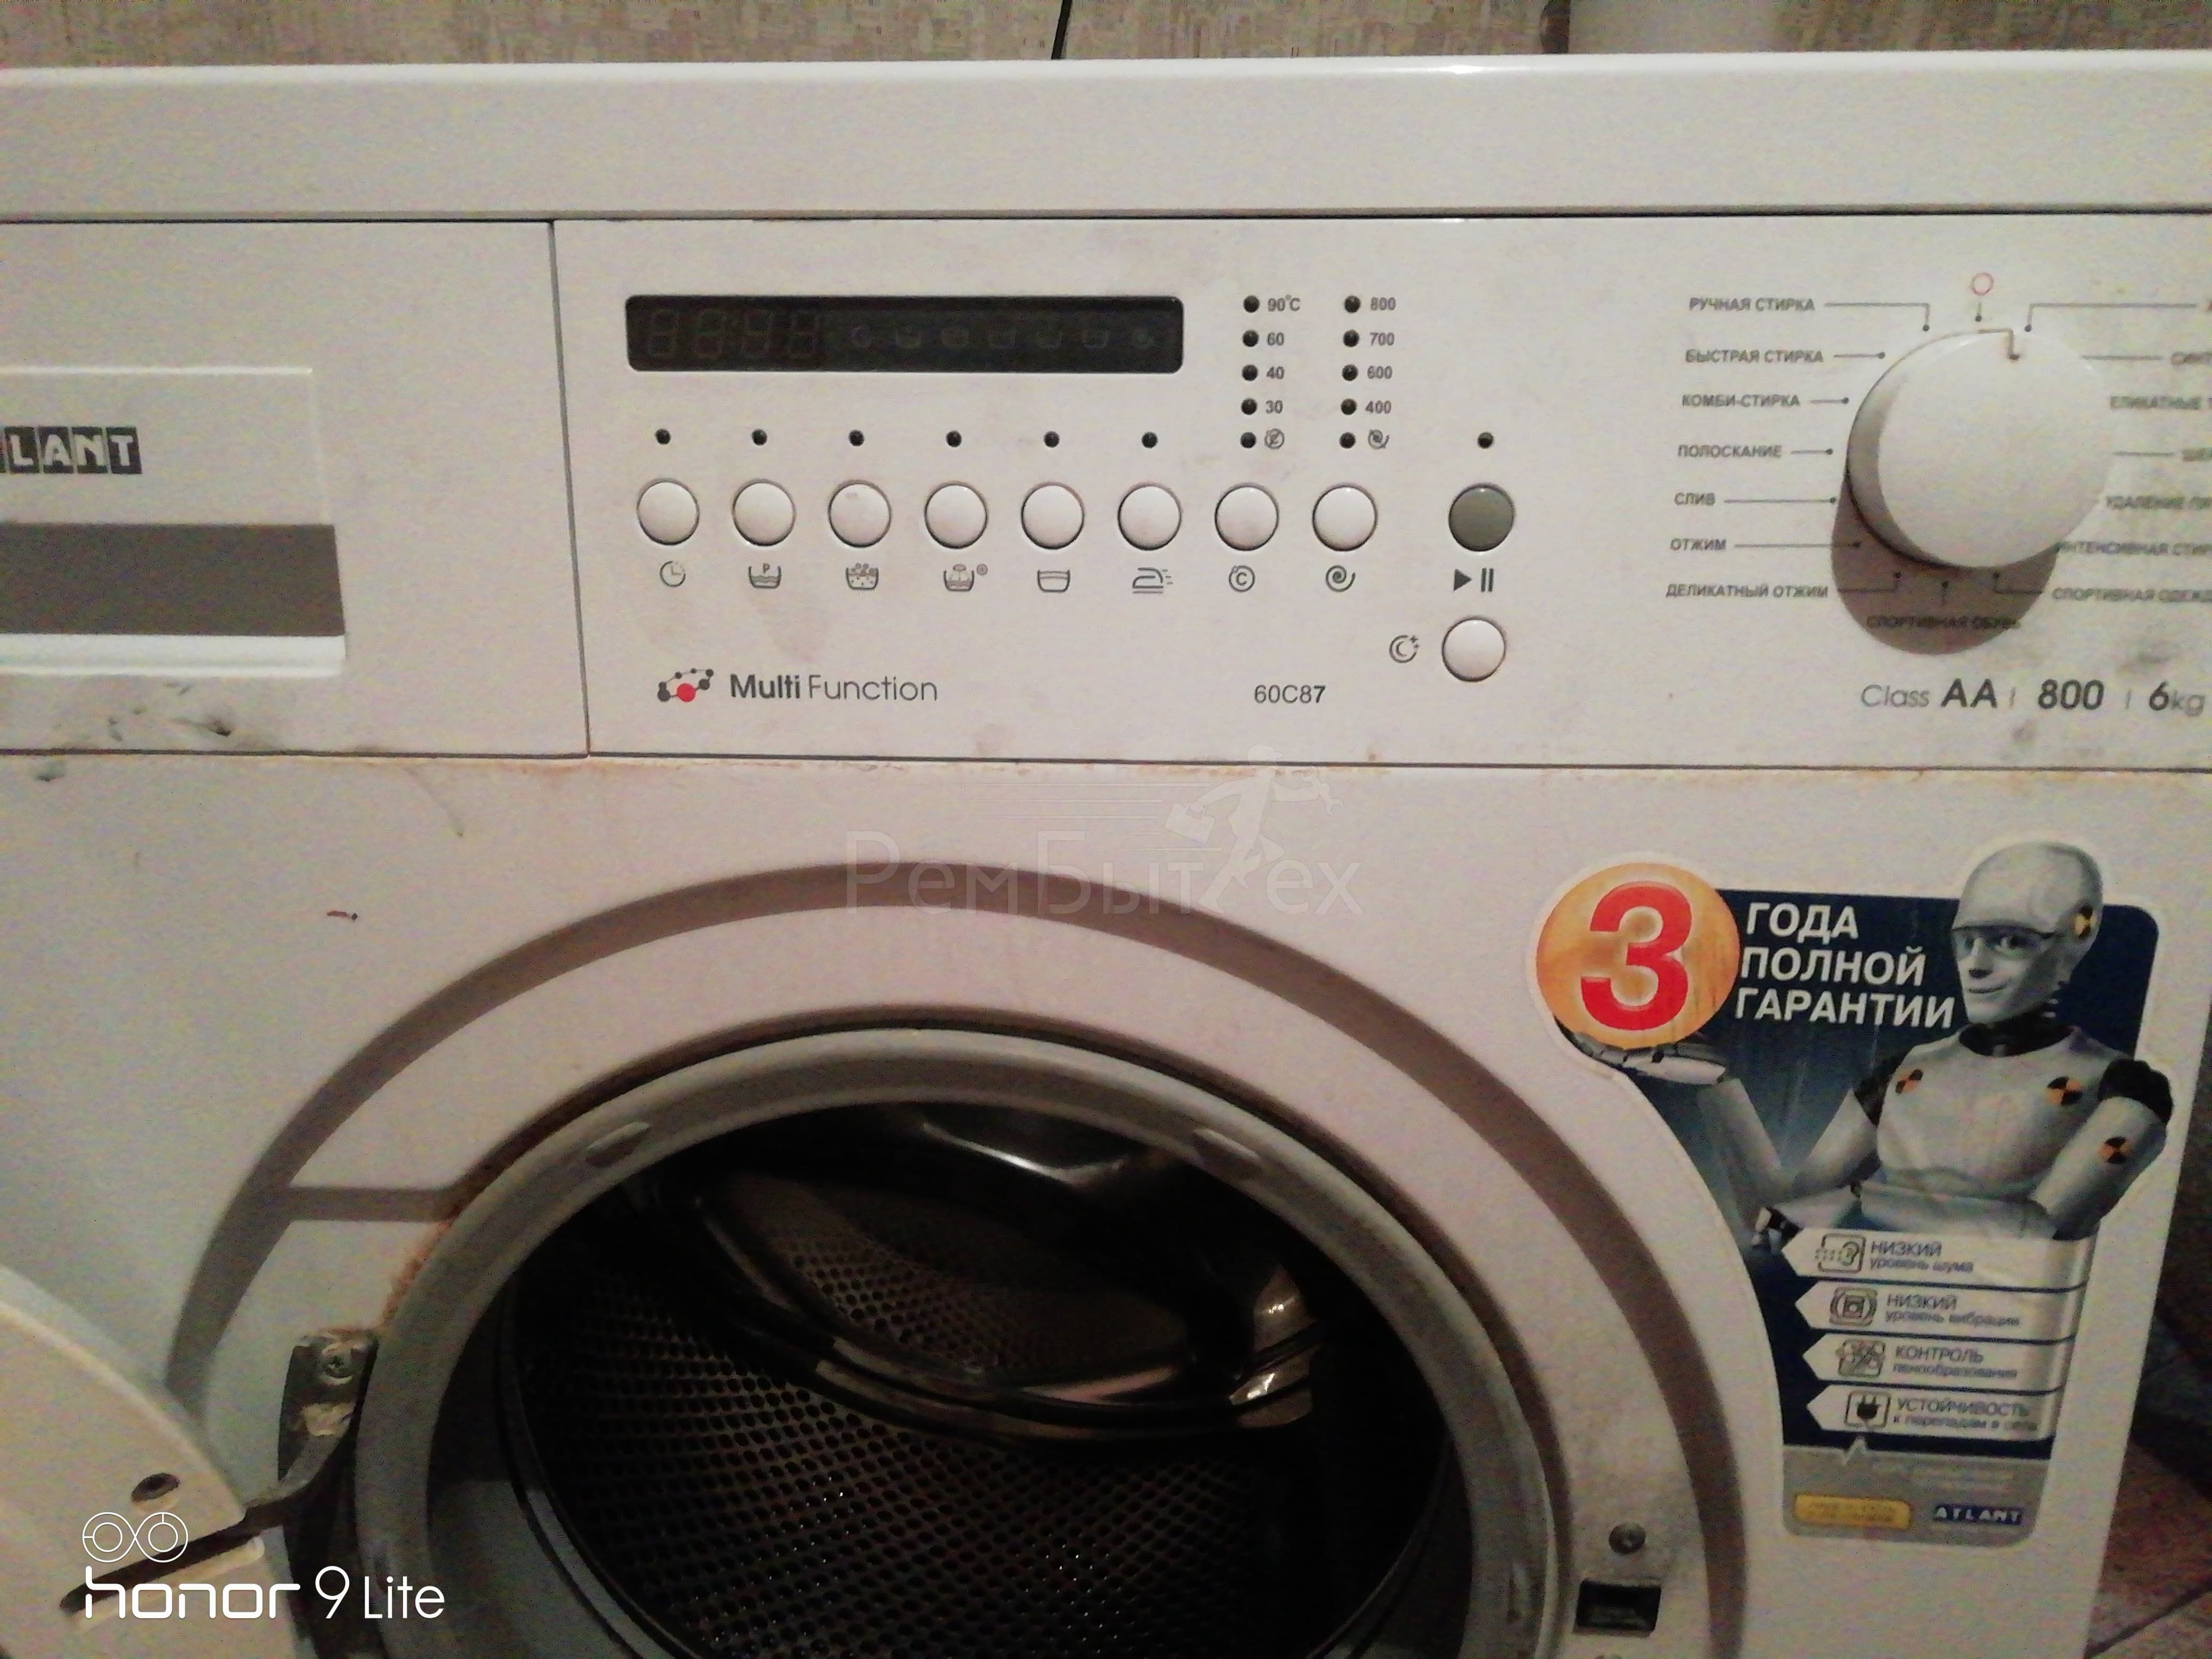 Как включить стиральную машину Атлант?